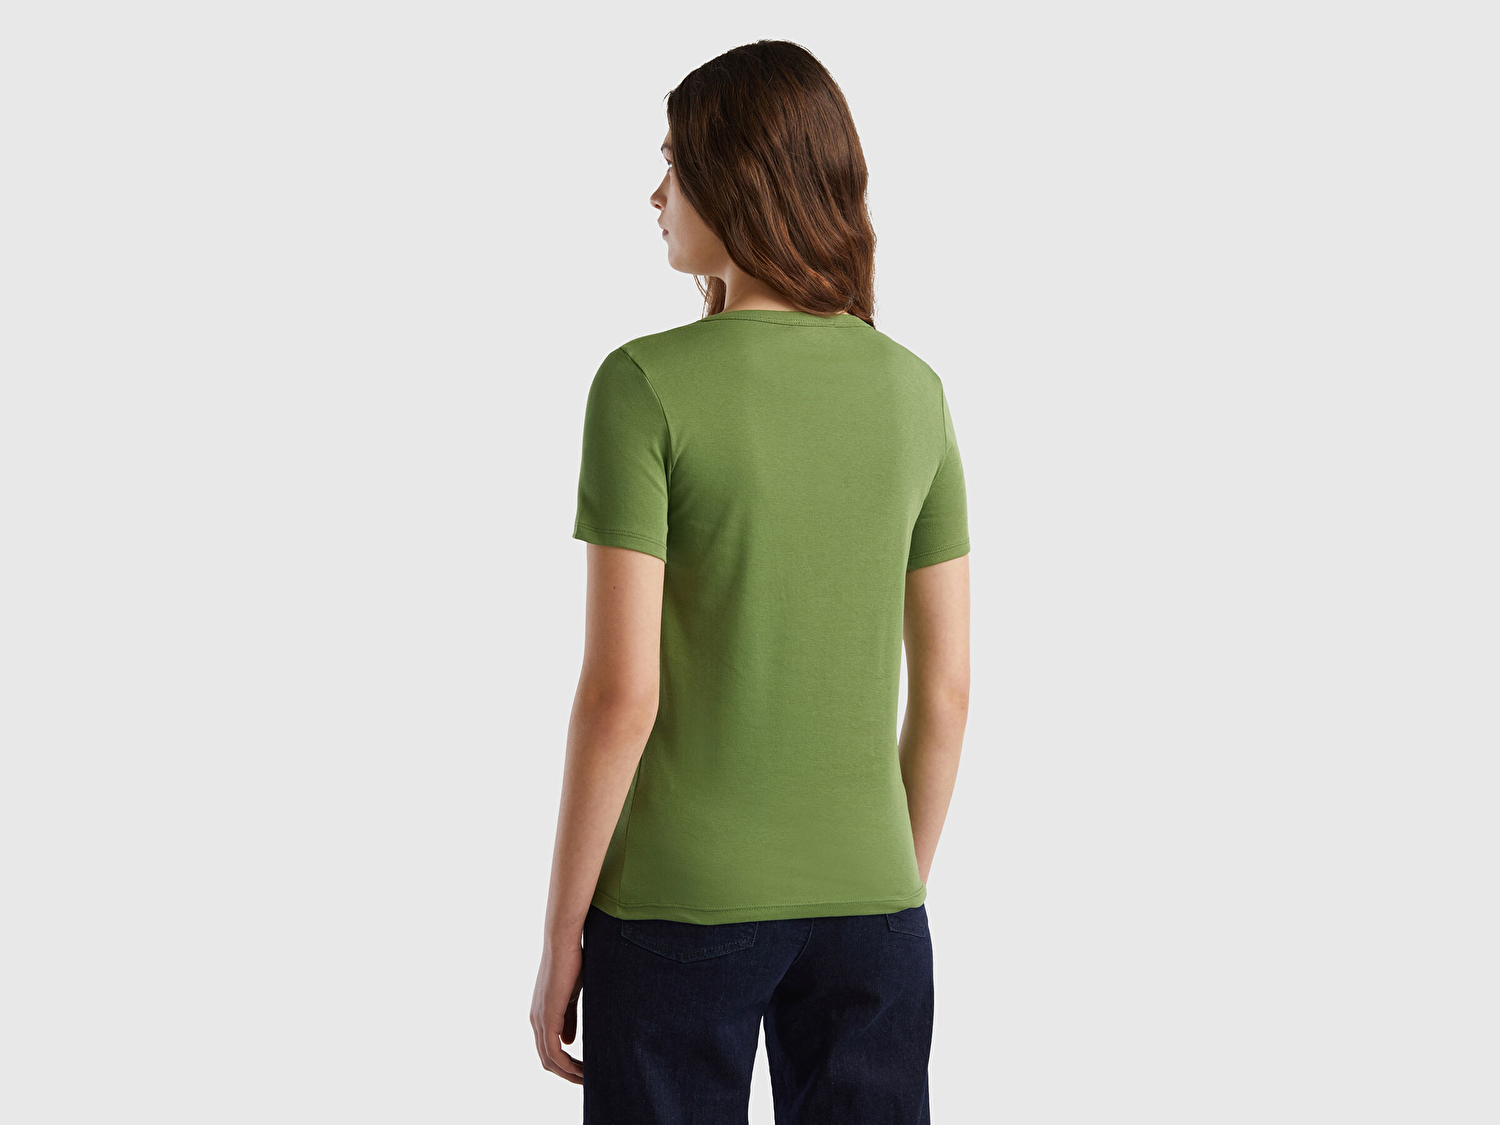 Benetton Kadın Soluk Yeşil %100 Koton Benetton Yazılı Basic T-Shirt